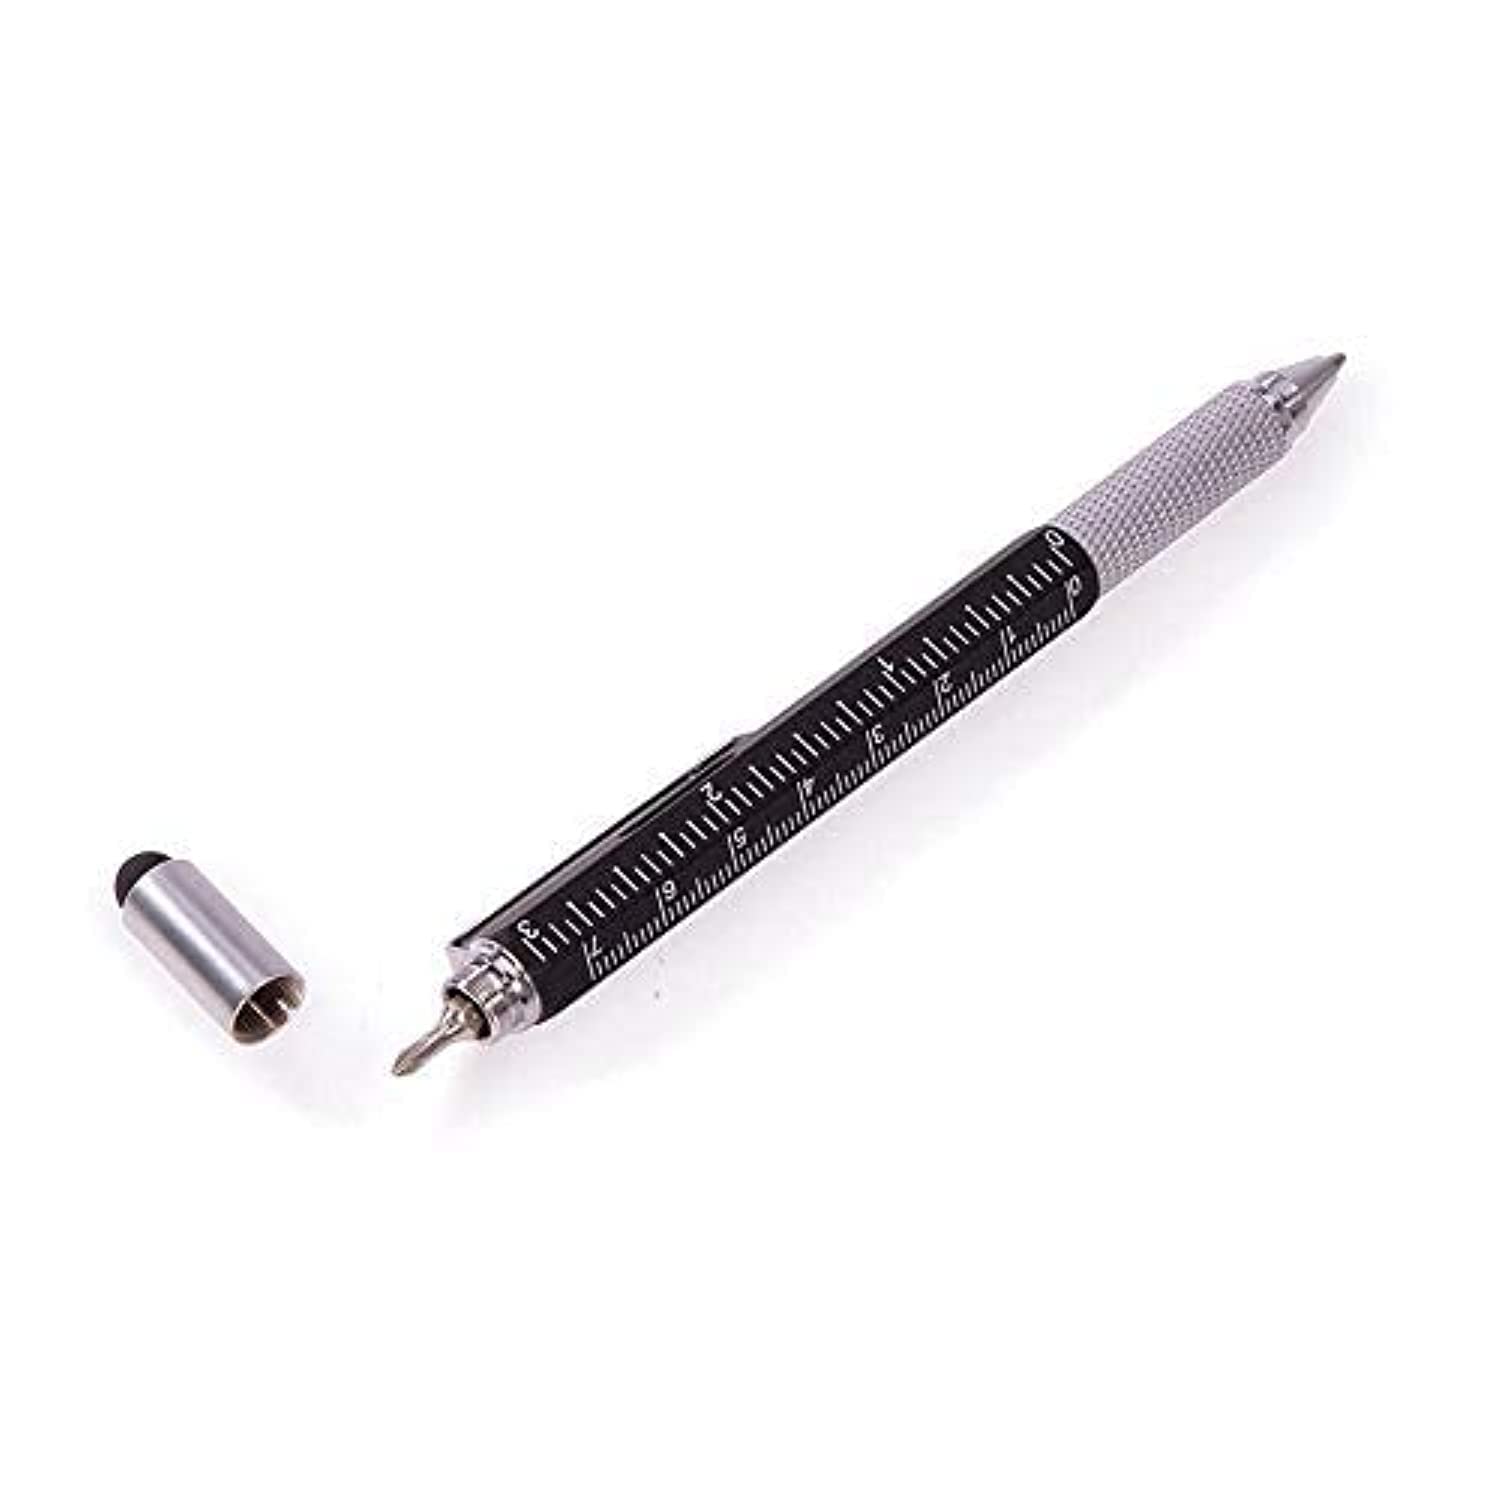 Kikkerland 4-In-1 Pen Tool (4342)